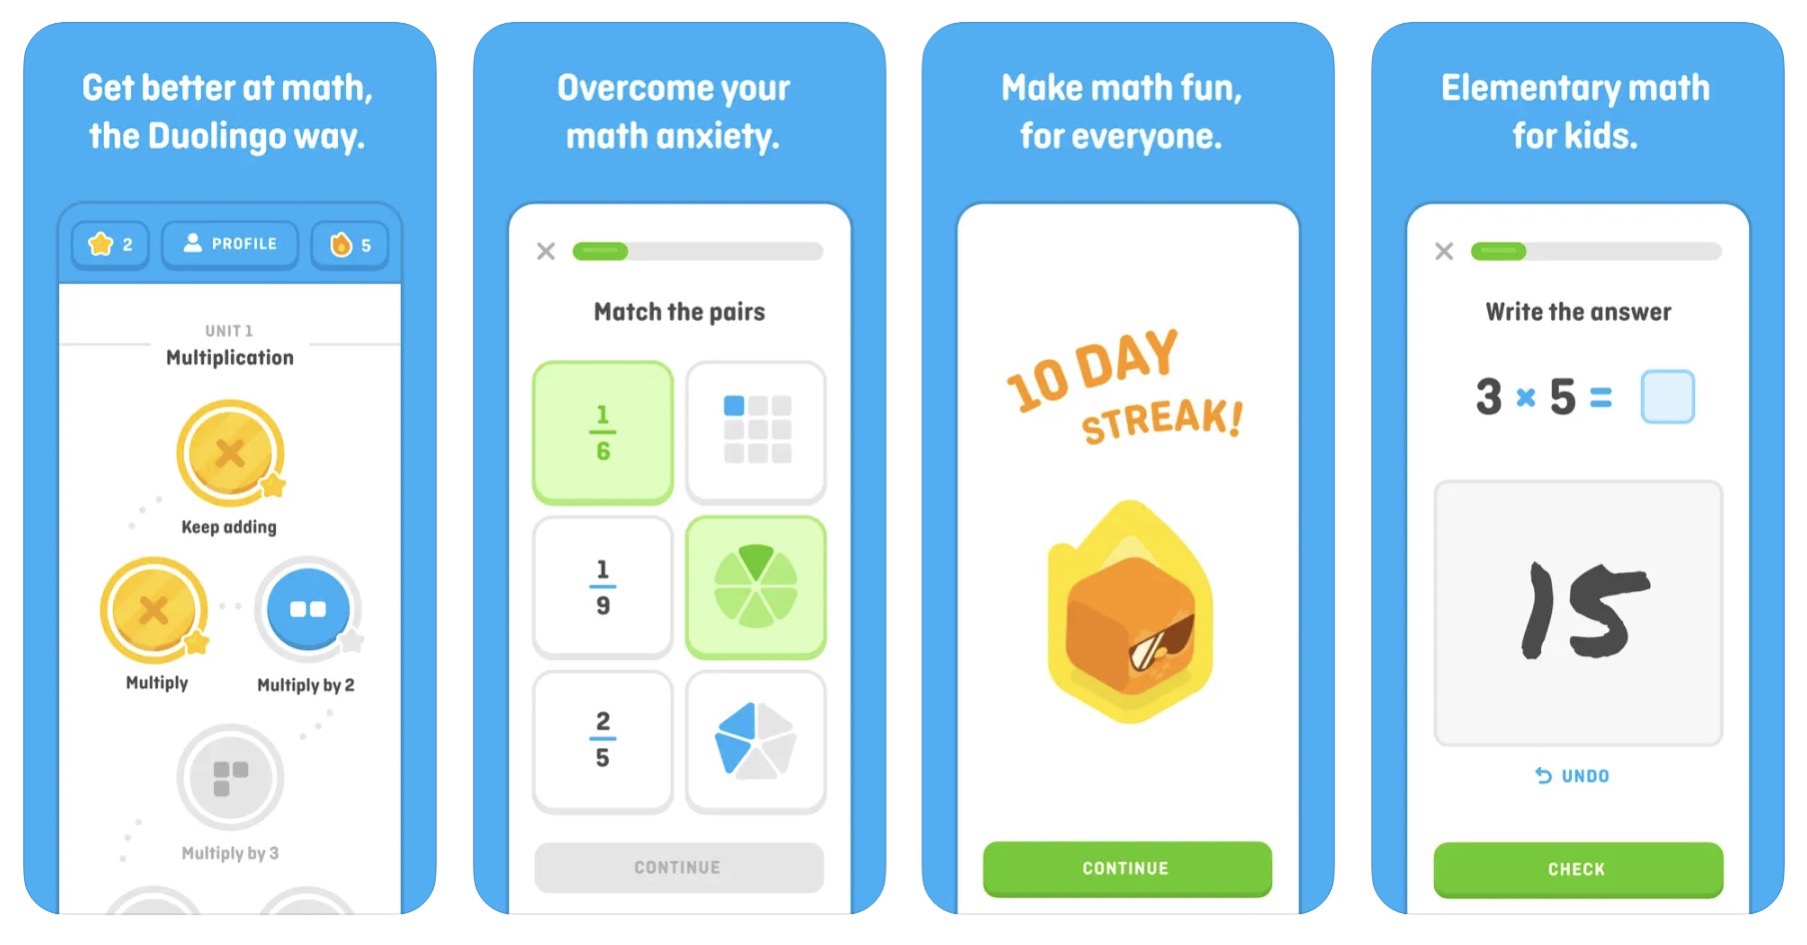 Duolingo sta ora rilasciando la propria app di matematica.  Allena le tue abilità matematiche con una nuova app per iOS.